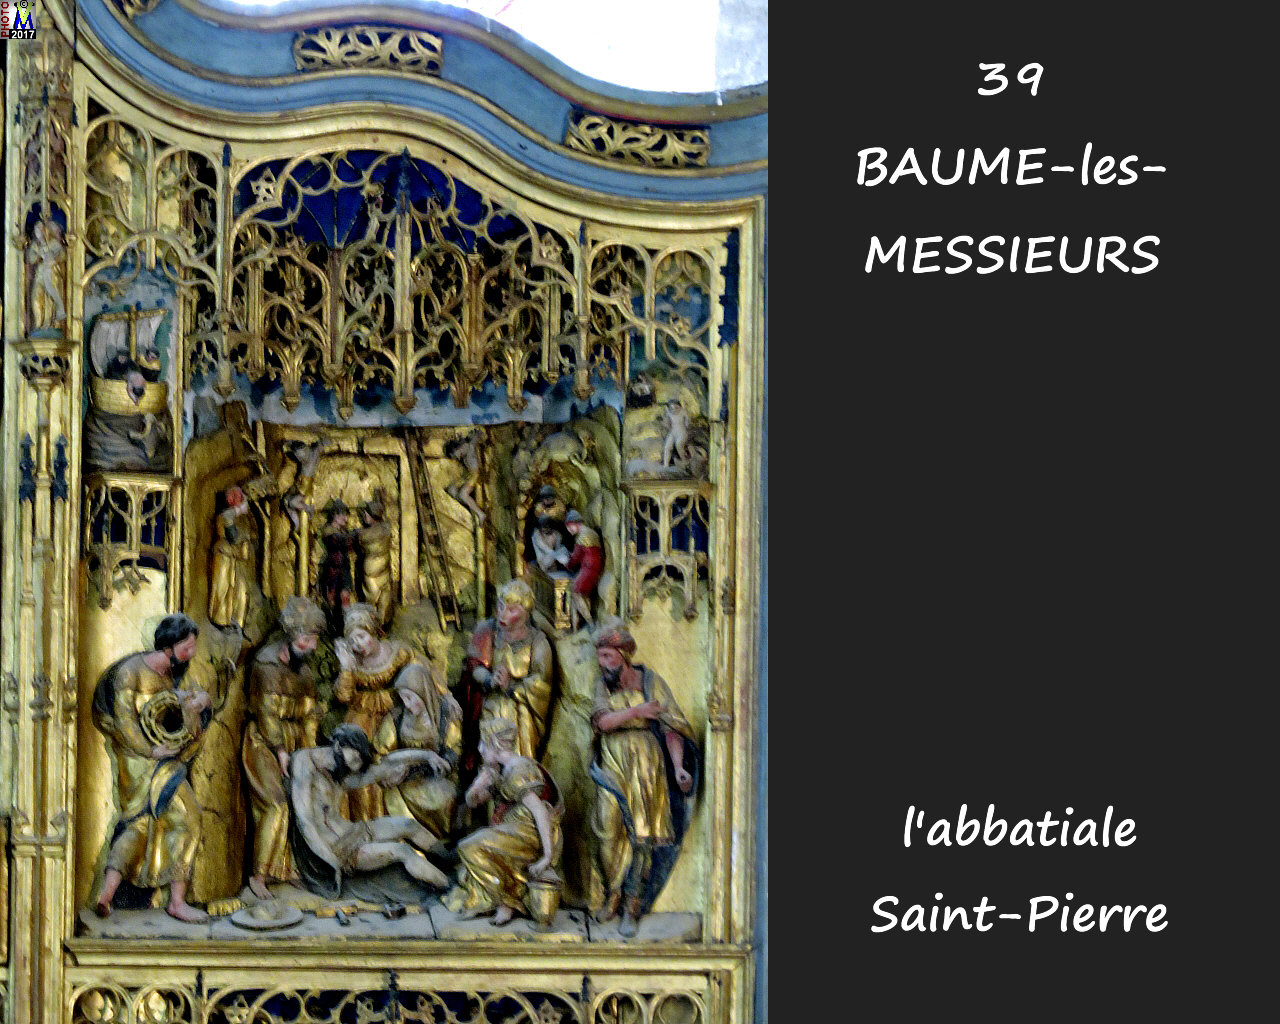 39BAUME-LES-MESSIEURS_abbatiale_242.jpg